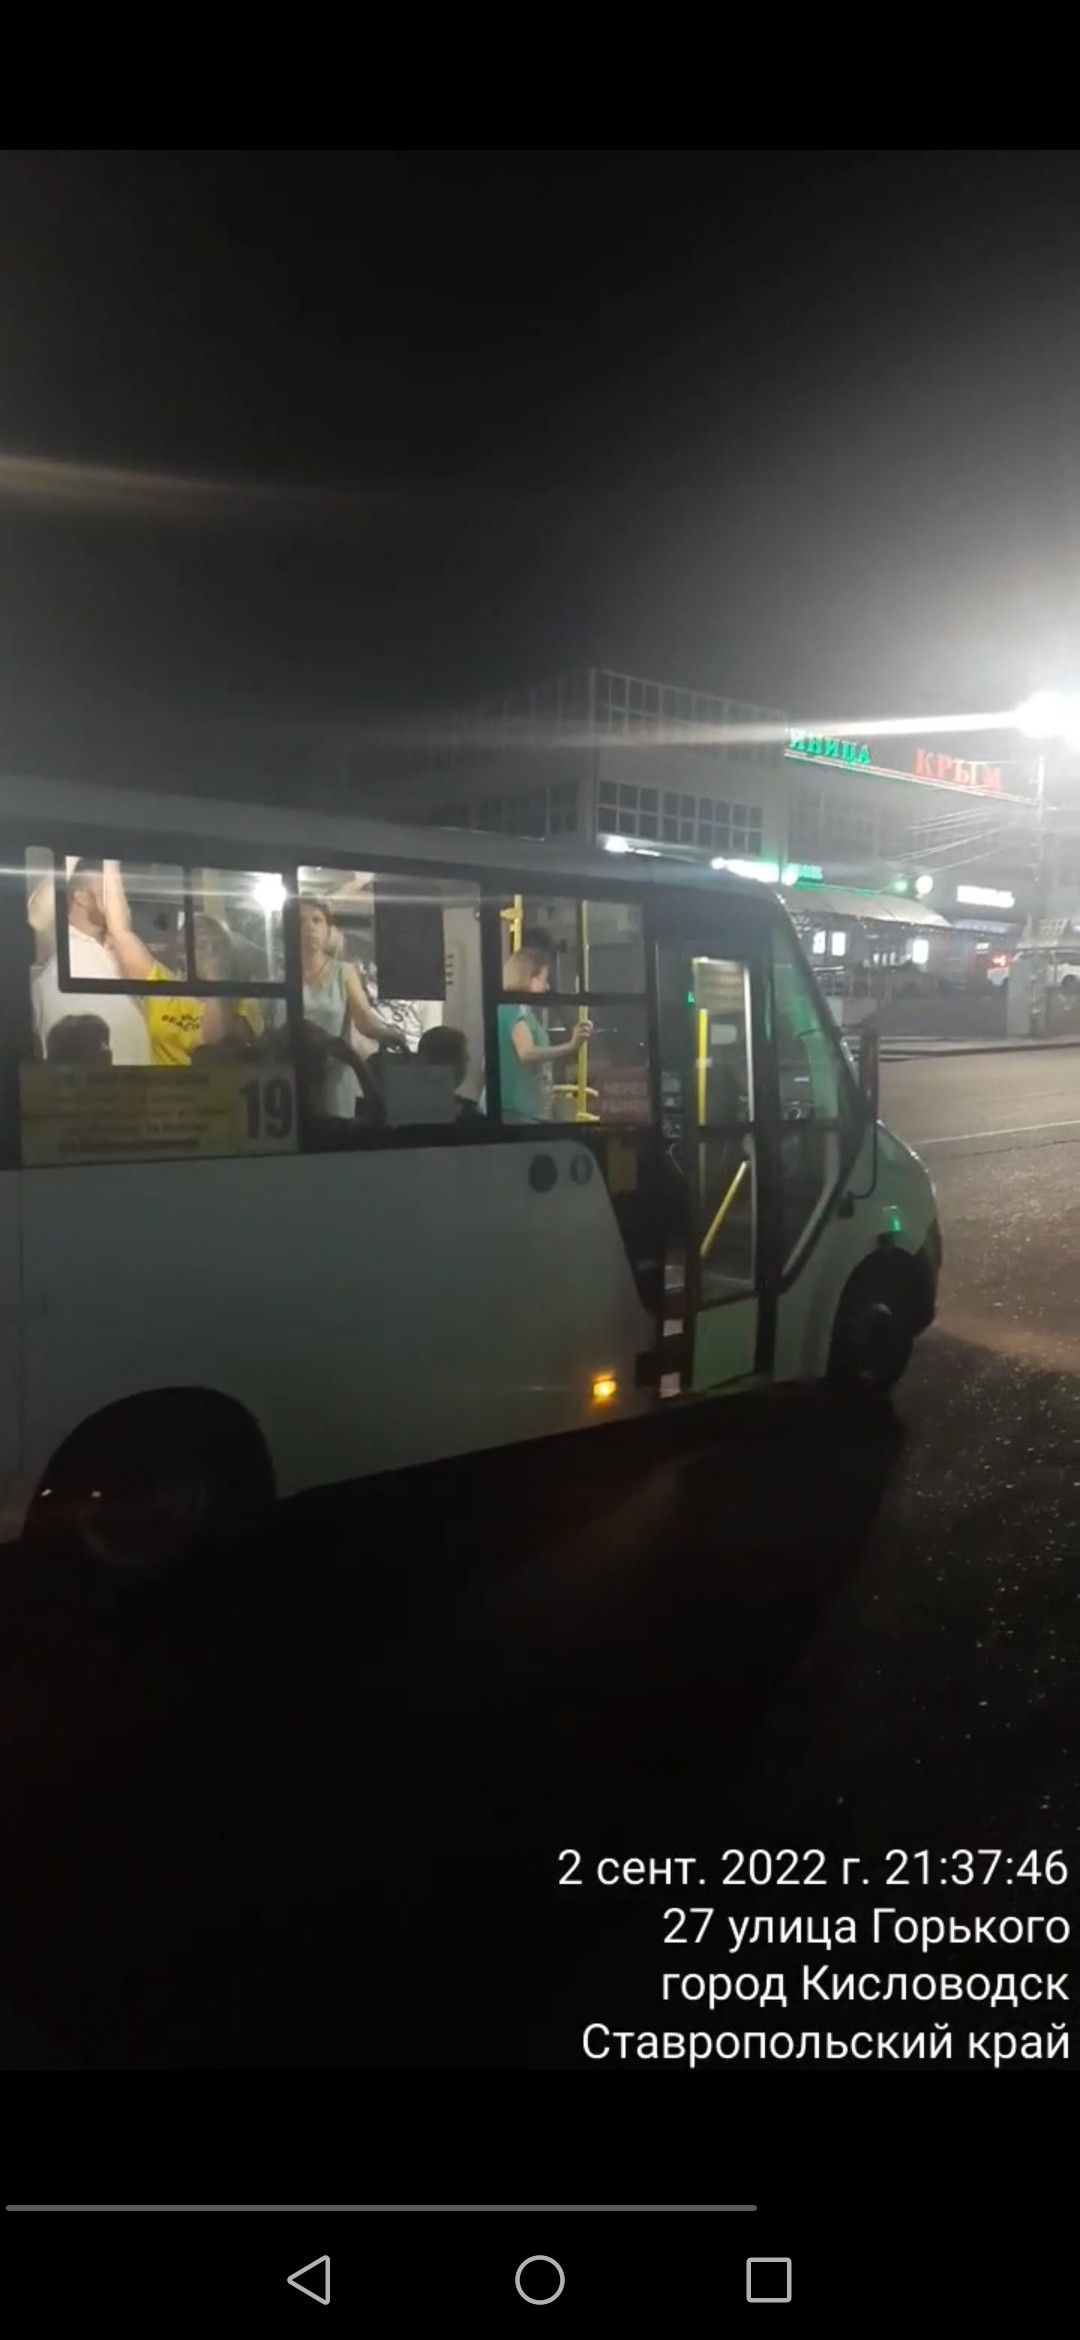 Работу общественного транспорта в Кисловодске продлили до 22:00